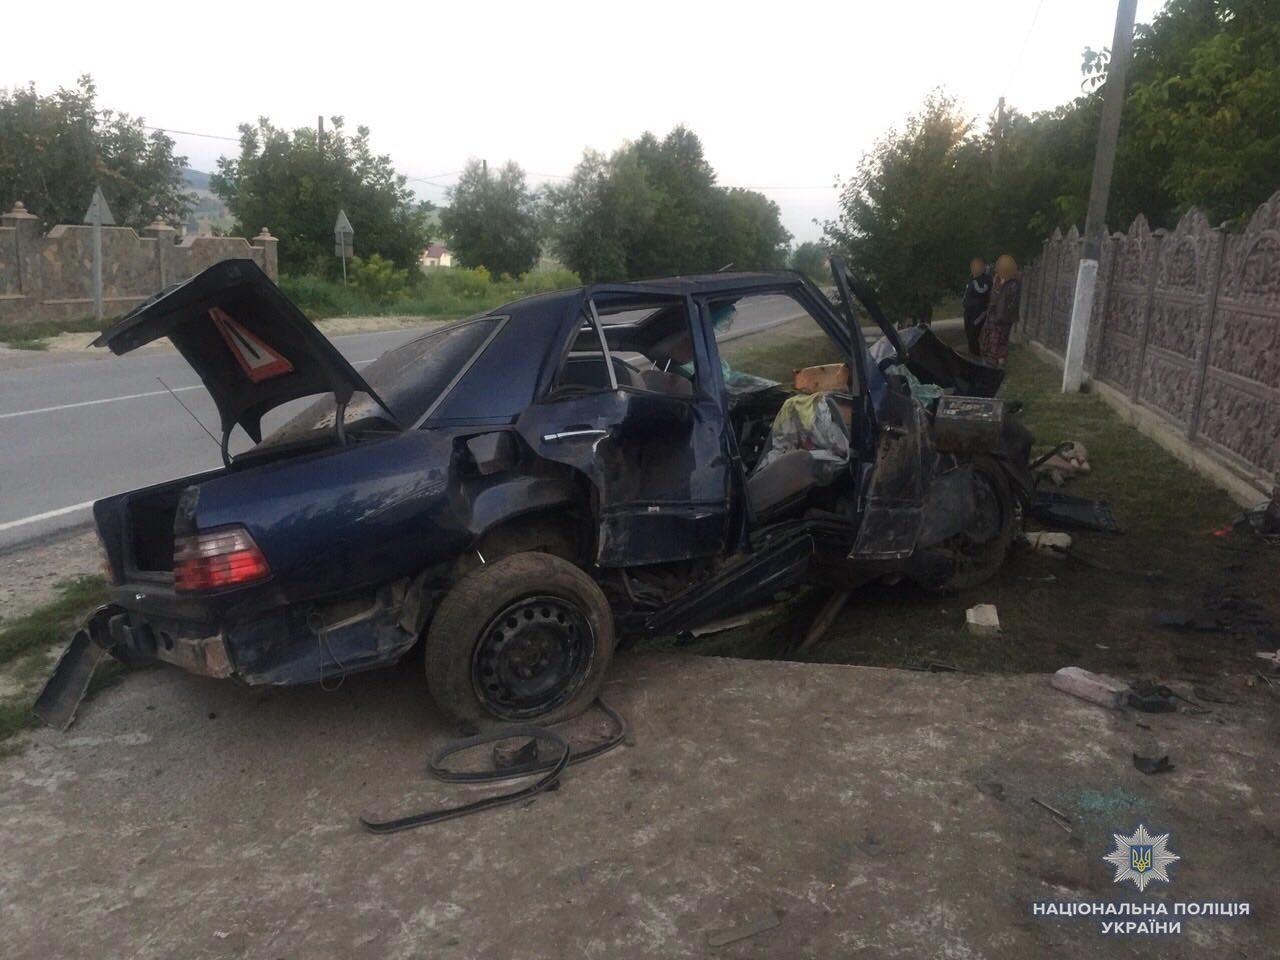 За вікенд на автошляхах Чернівецької області сталося чотири ДТП, одна людина загинула і тринадцять травмовано. Серед потерпілих – п’ятеро дітей